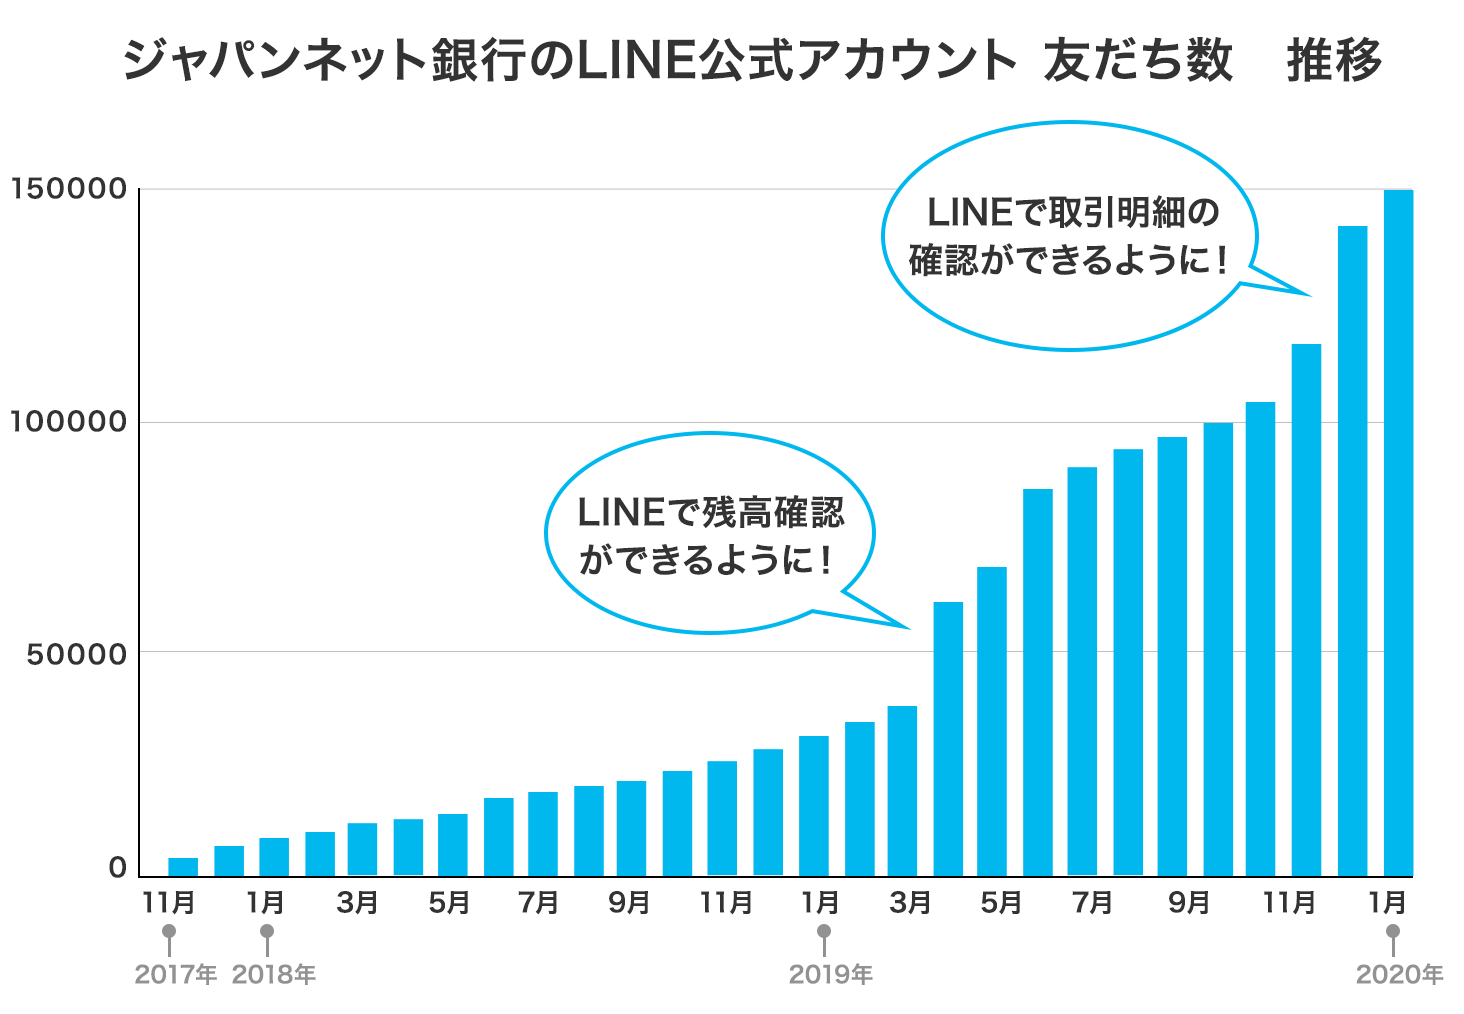 ジャパンネット銀行のLINE公式アカウント友だち数推移　2017年11月の開設から、2019年3月（友だち数約4万）に残高確認が可能に、2019年11月（友だち数約12万）から取引明細の確認が可能に、といったバージョンアップを経て2020年1月現在、友だち数は約15万です。